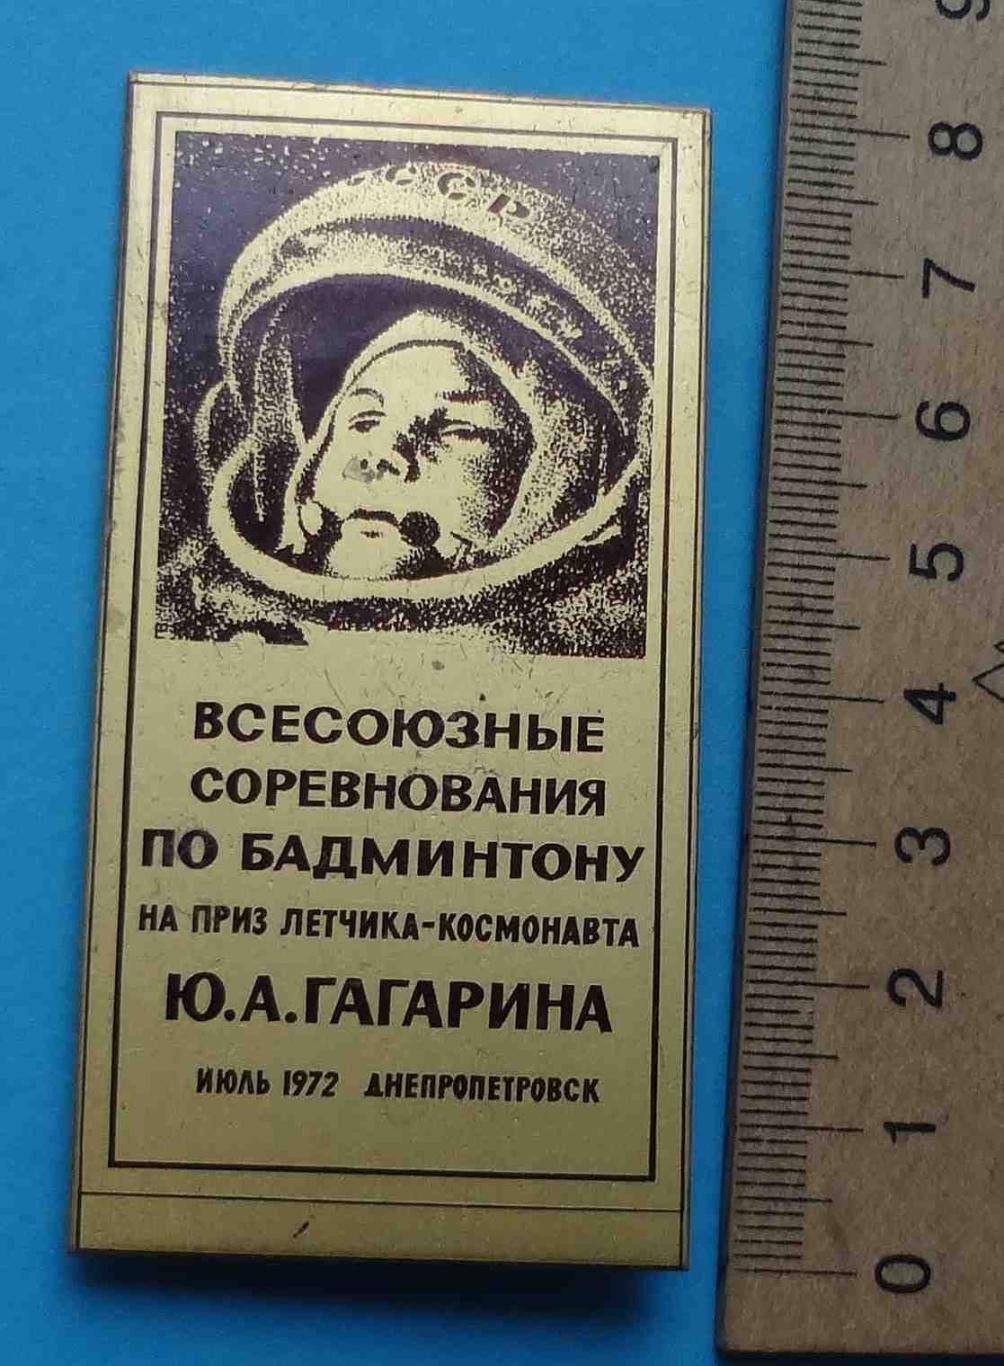 Всесоюзные соревнования по бадминтону на приз летчика-космонавта Гагарина 1972